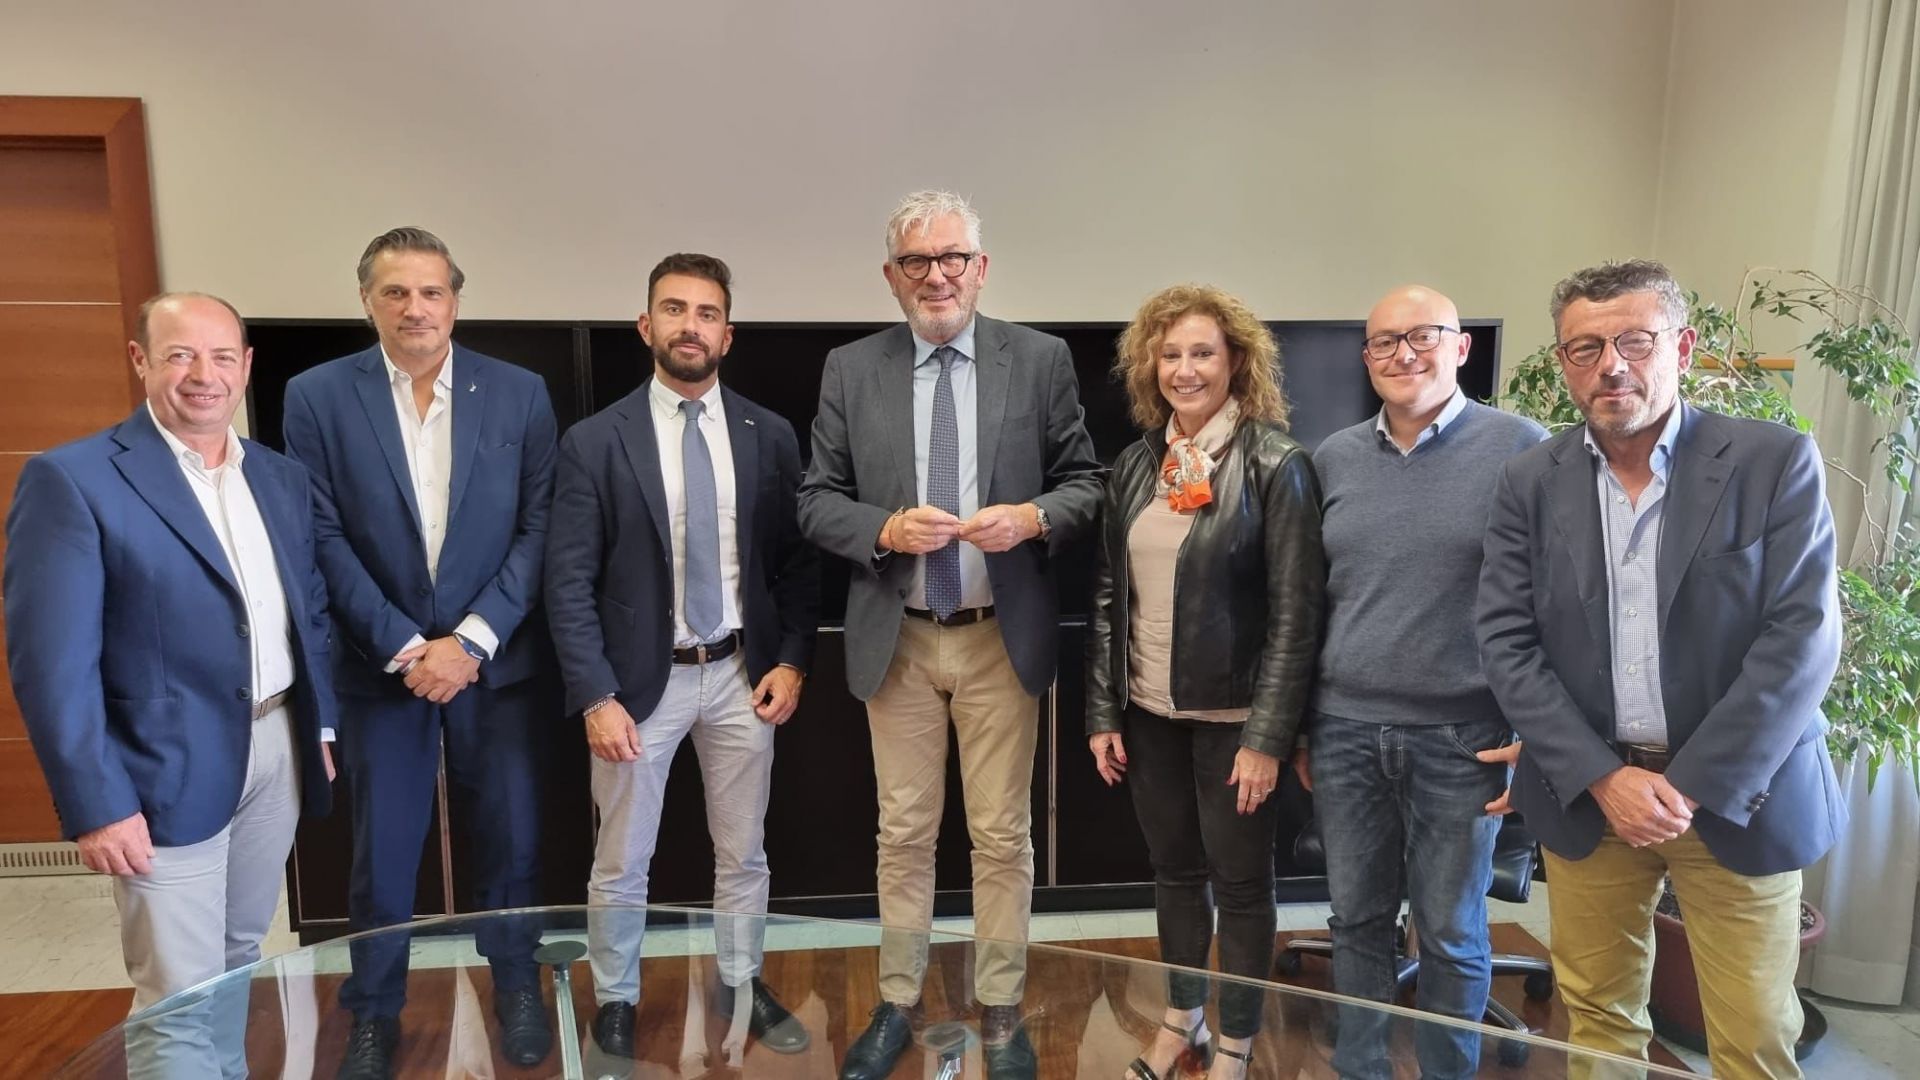 Sanità Liguria, la Lega incontra il neo assessore Gratarola: "È stato costruttivo. Al centro i temi principali"